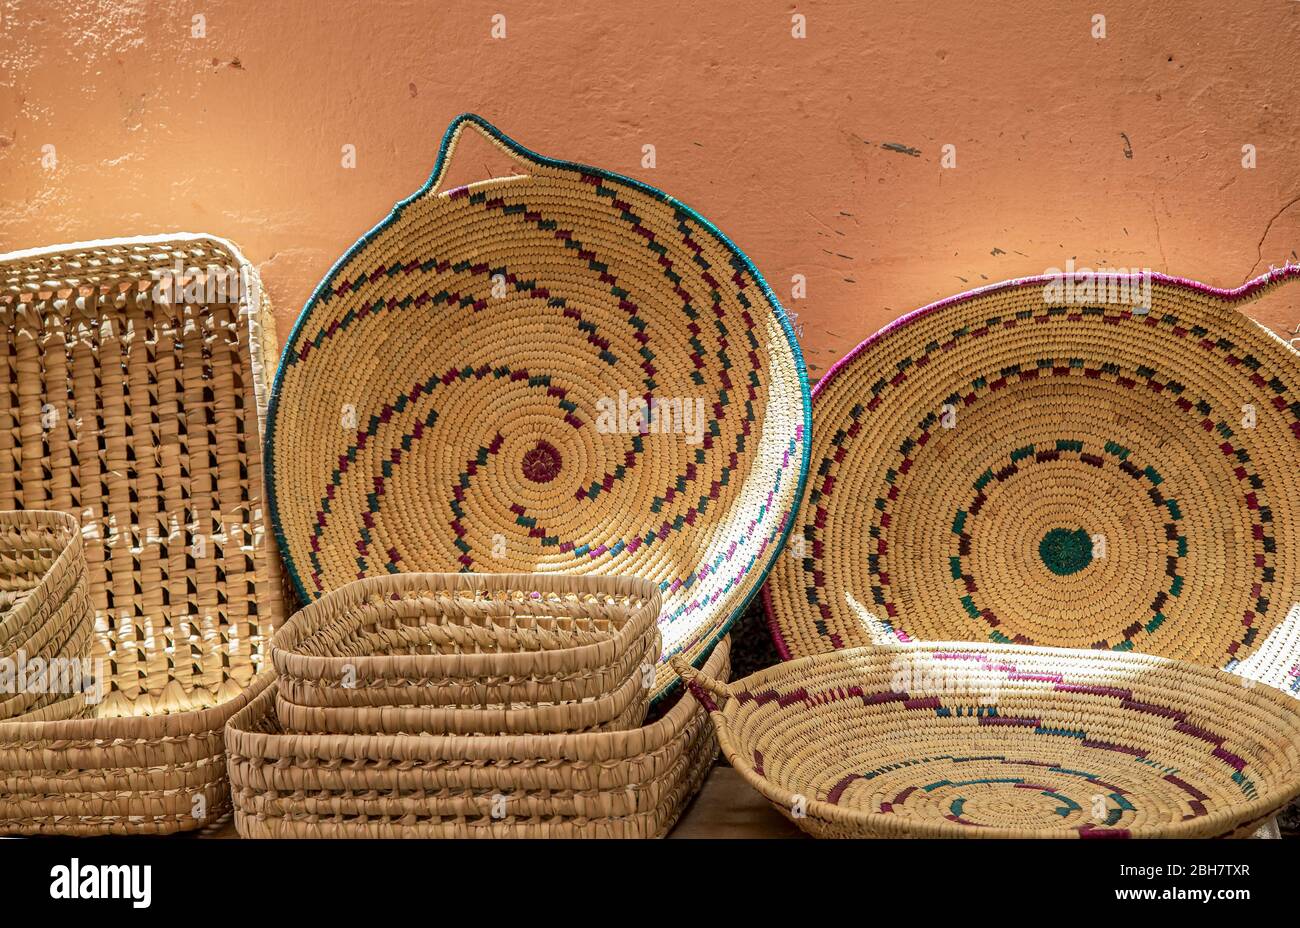 Colorato cesto wattled fatto a mano in vendita al bazar di Marrakech.Morocco. Foto Stock